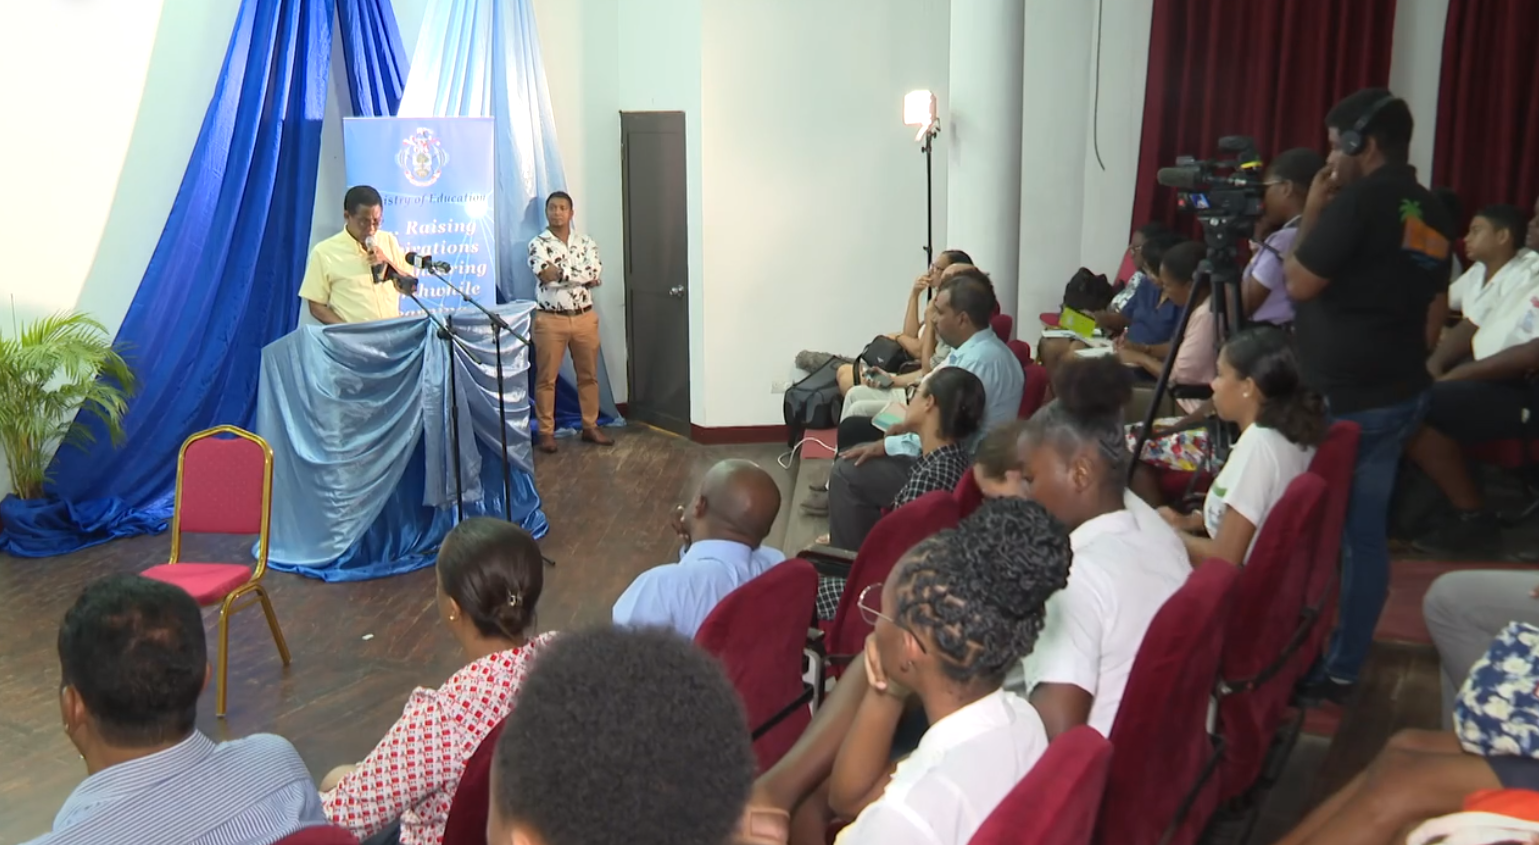 Minister Ledikasyon in organiz en sesyon pou fer bann etidyan konn plis lo ‘Aspiring Teachers Club’